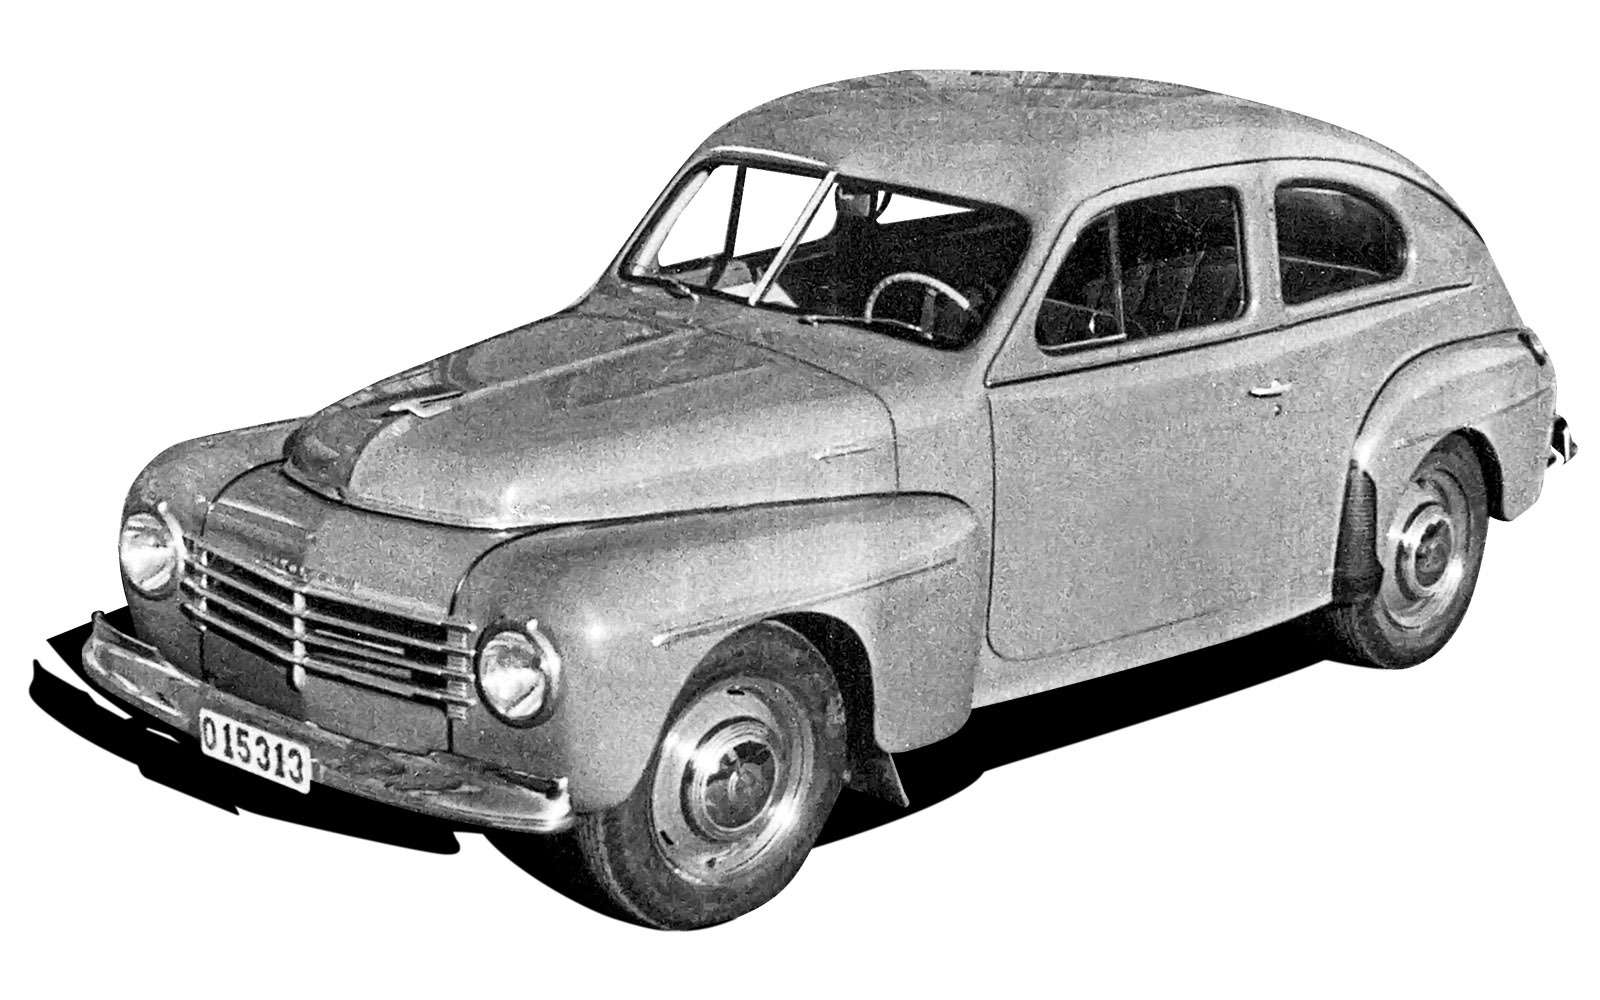 Первый по-настоящему новый послевоенный автомобиль Volvo PV444 представили в политически нейтральной Швеции в 1944 году. Дизайном он напоминал американские модели начала 1940‑х. Второй по-настоящему новой машиной стала в 1946‑м наша Победа.